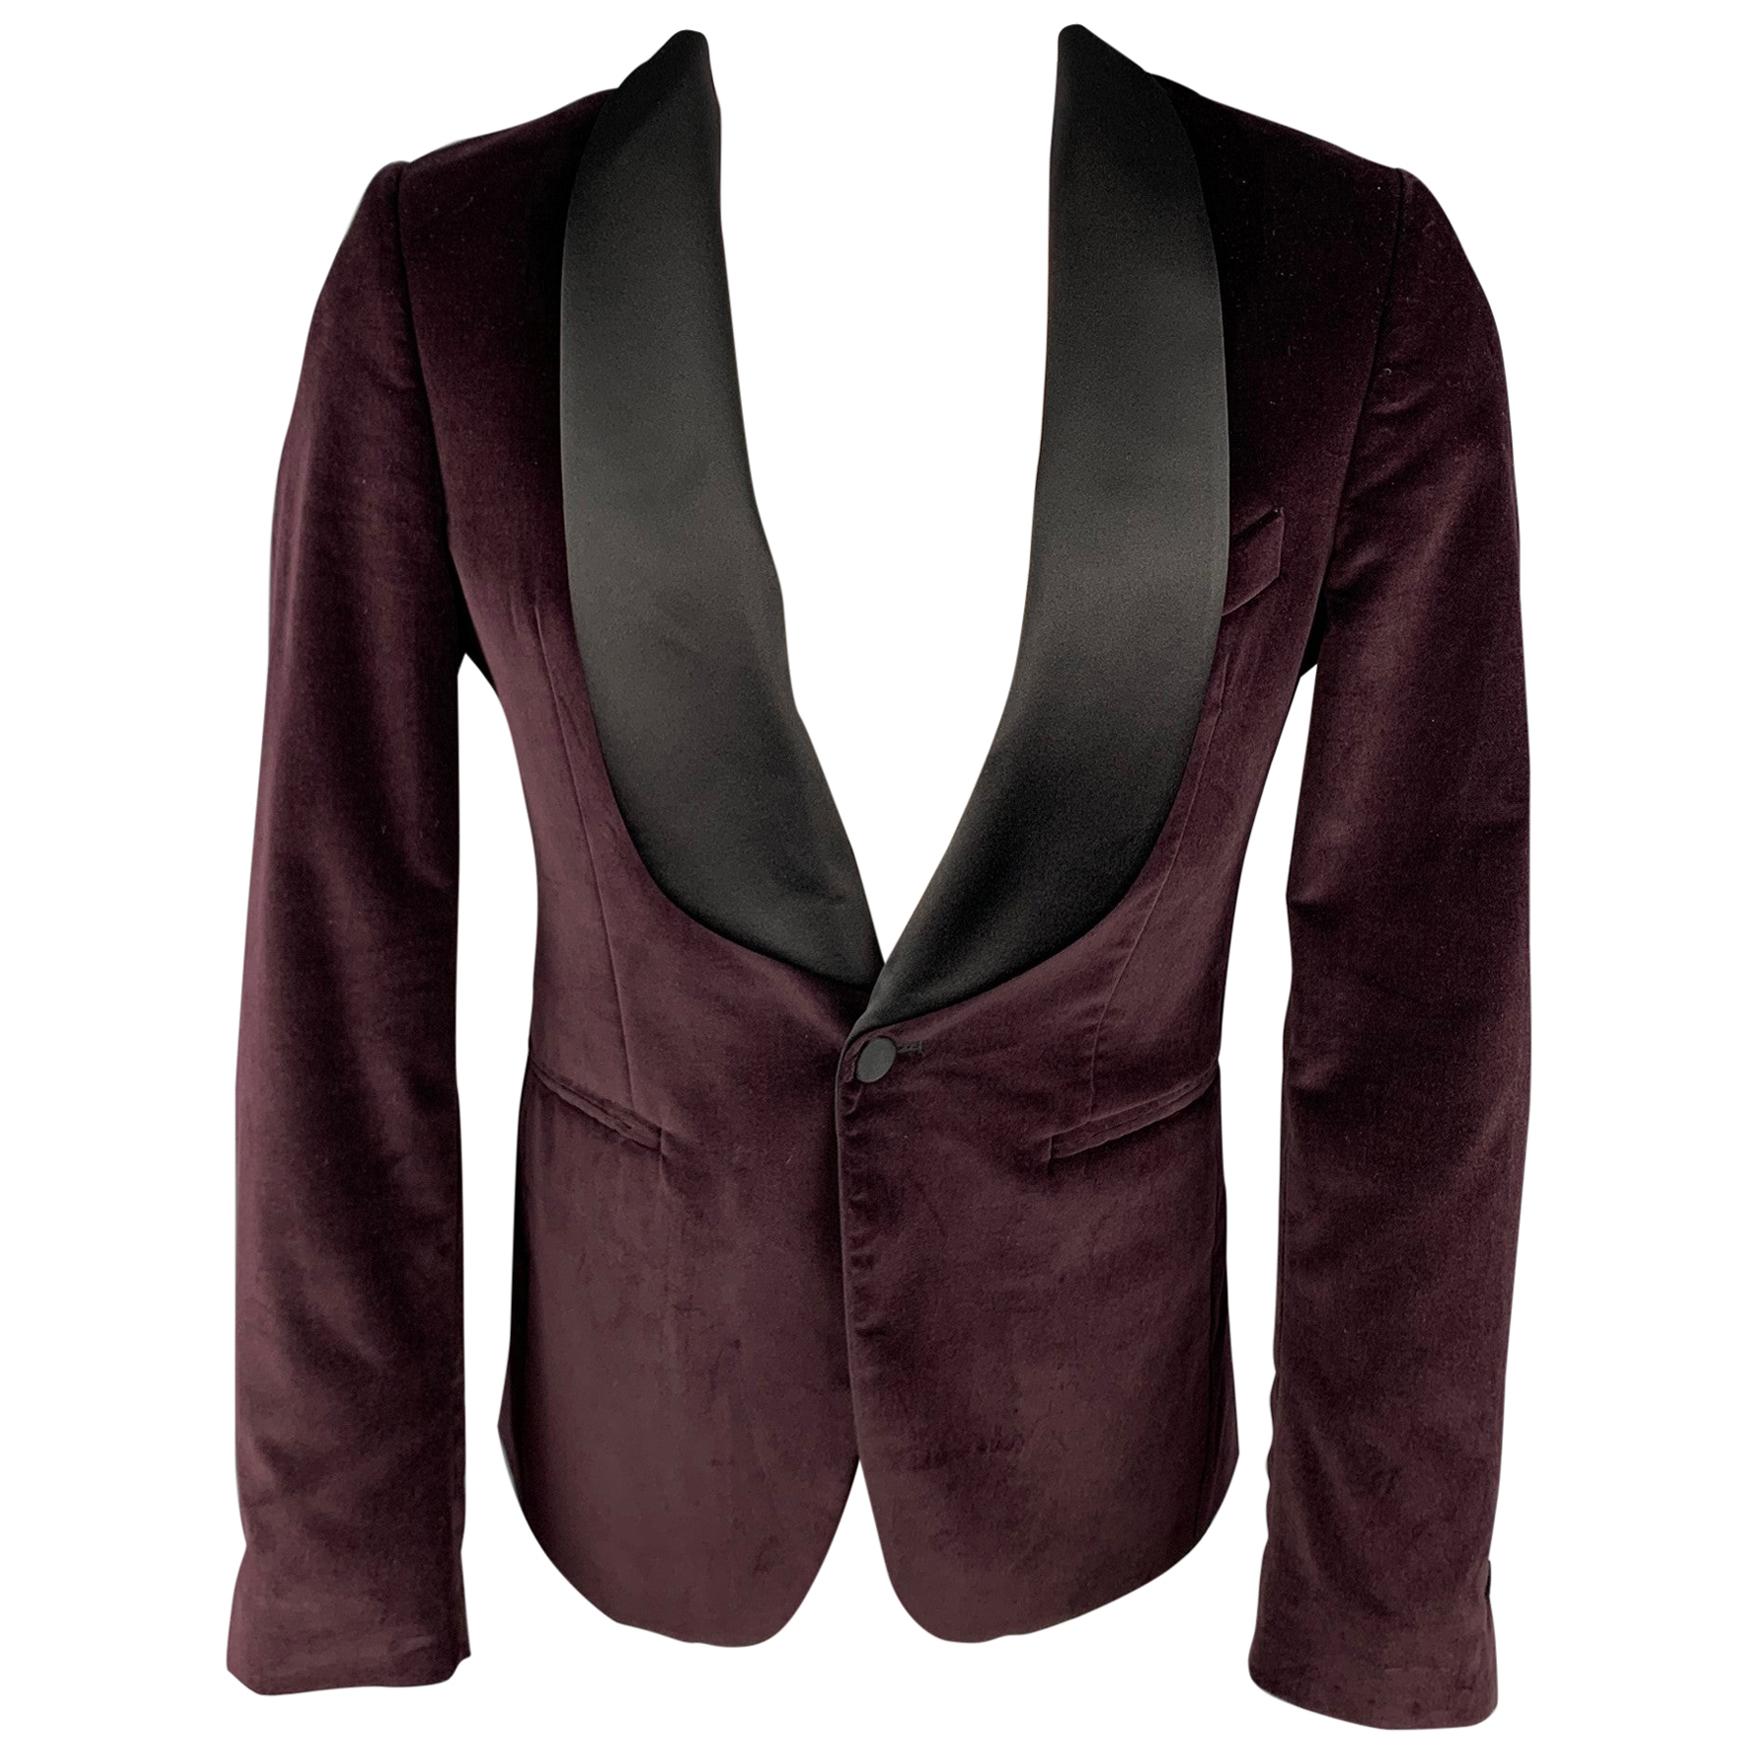 SALLE PRIVEE Size 36 Burgundy Velvet Shawl Collar Sport Coat